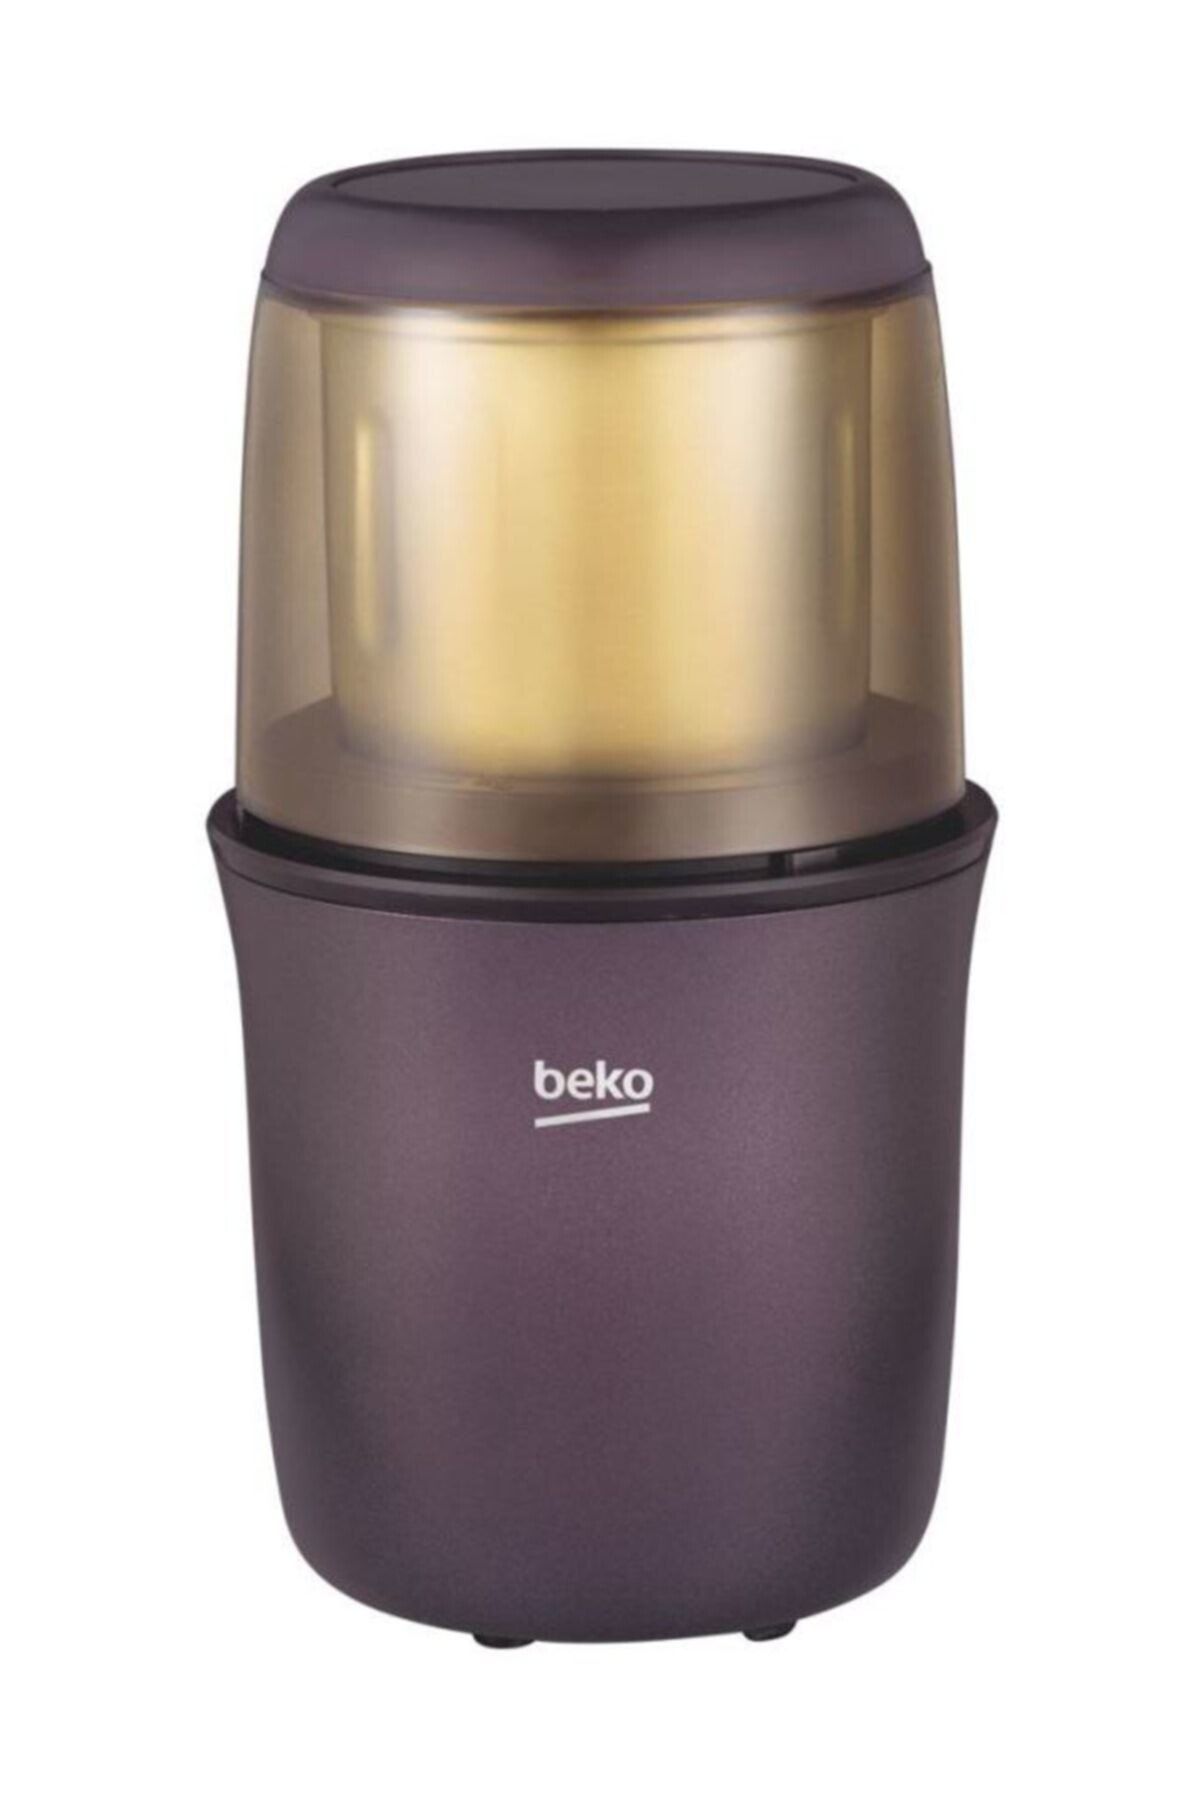 Beko Bkk 2104 Kahve Ve Baharat Öğütme Makinesi